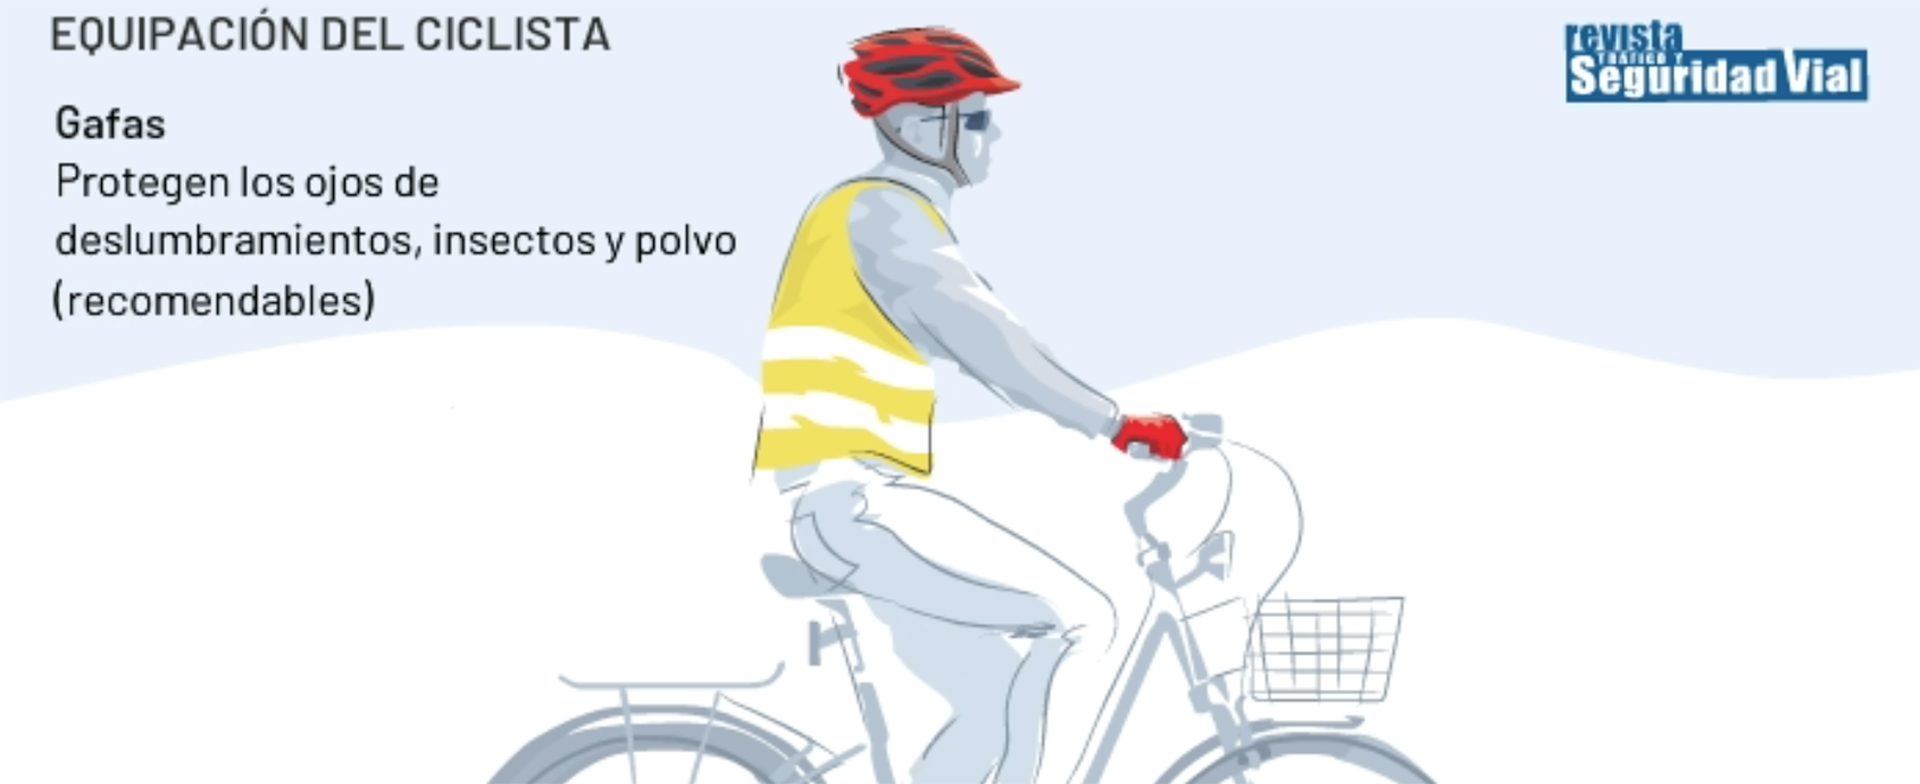 - Ciclista, consejos para equiparte ti y a tu bicicleta